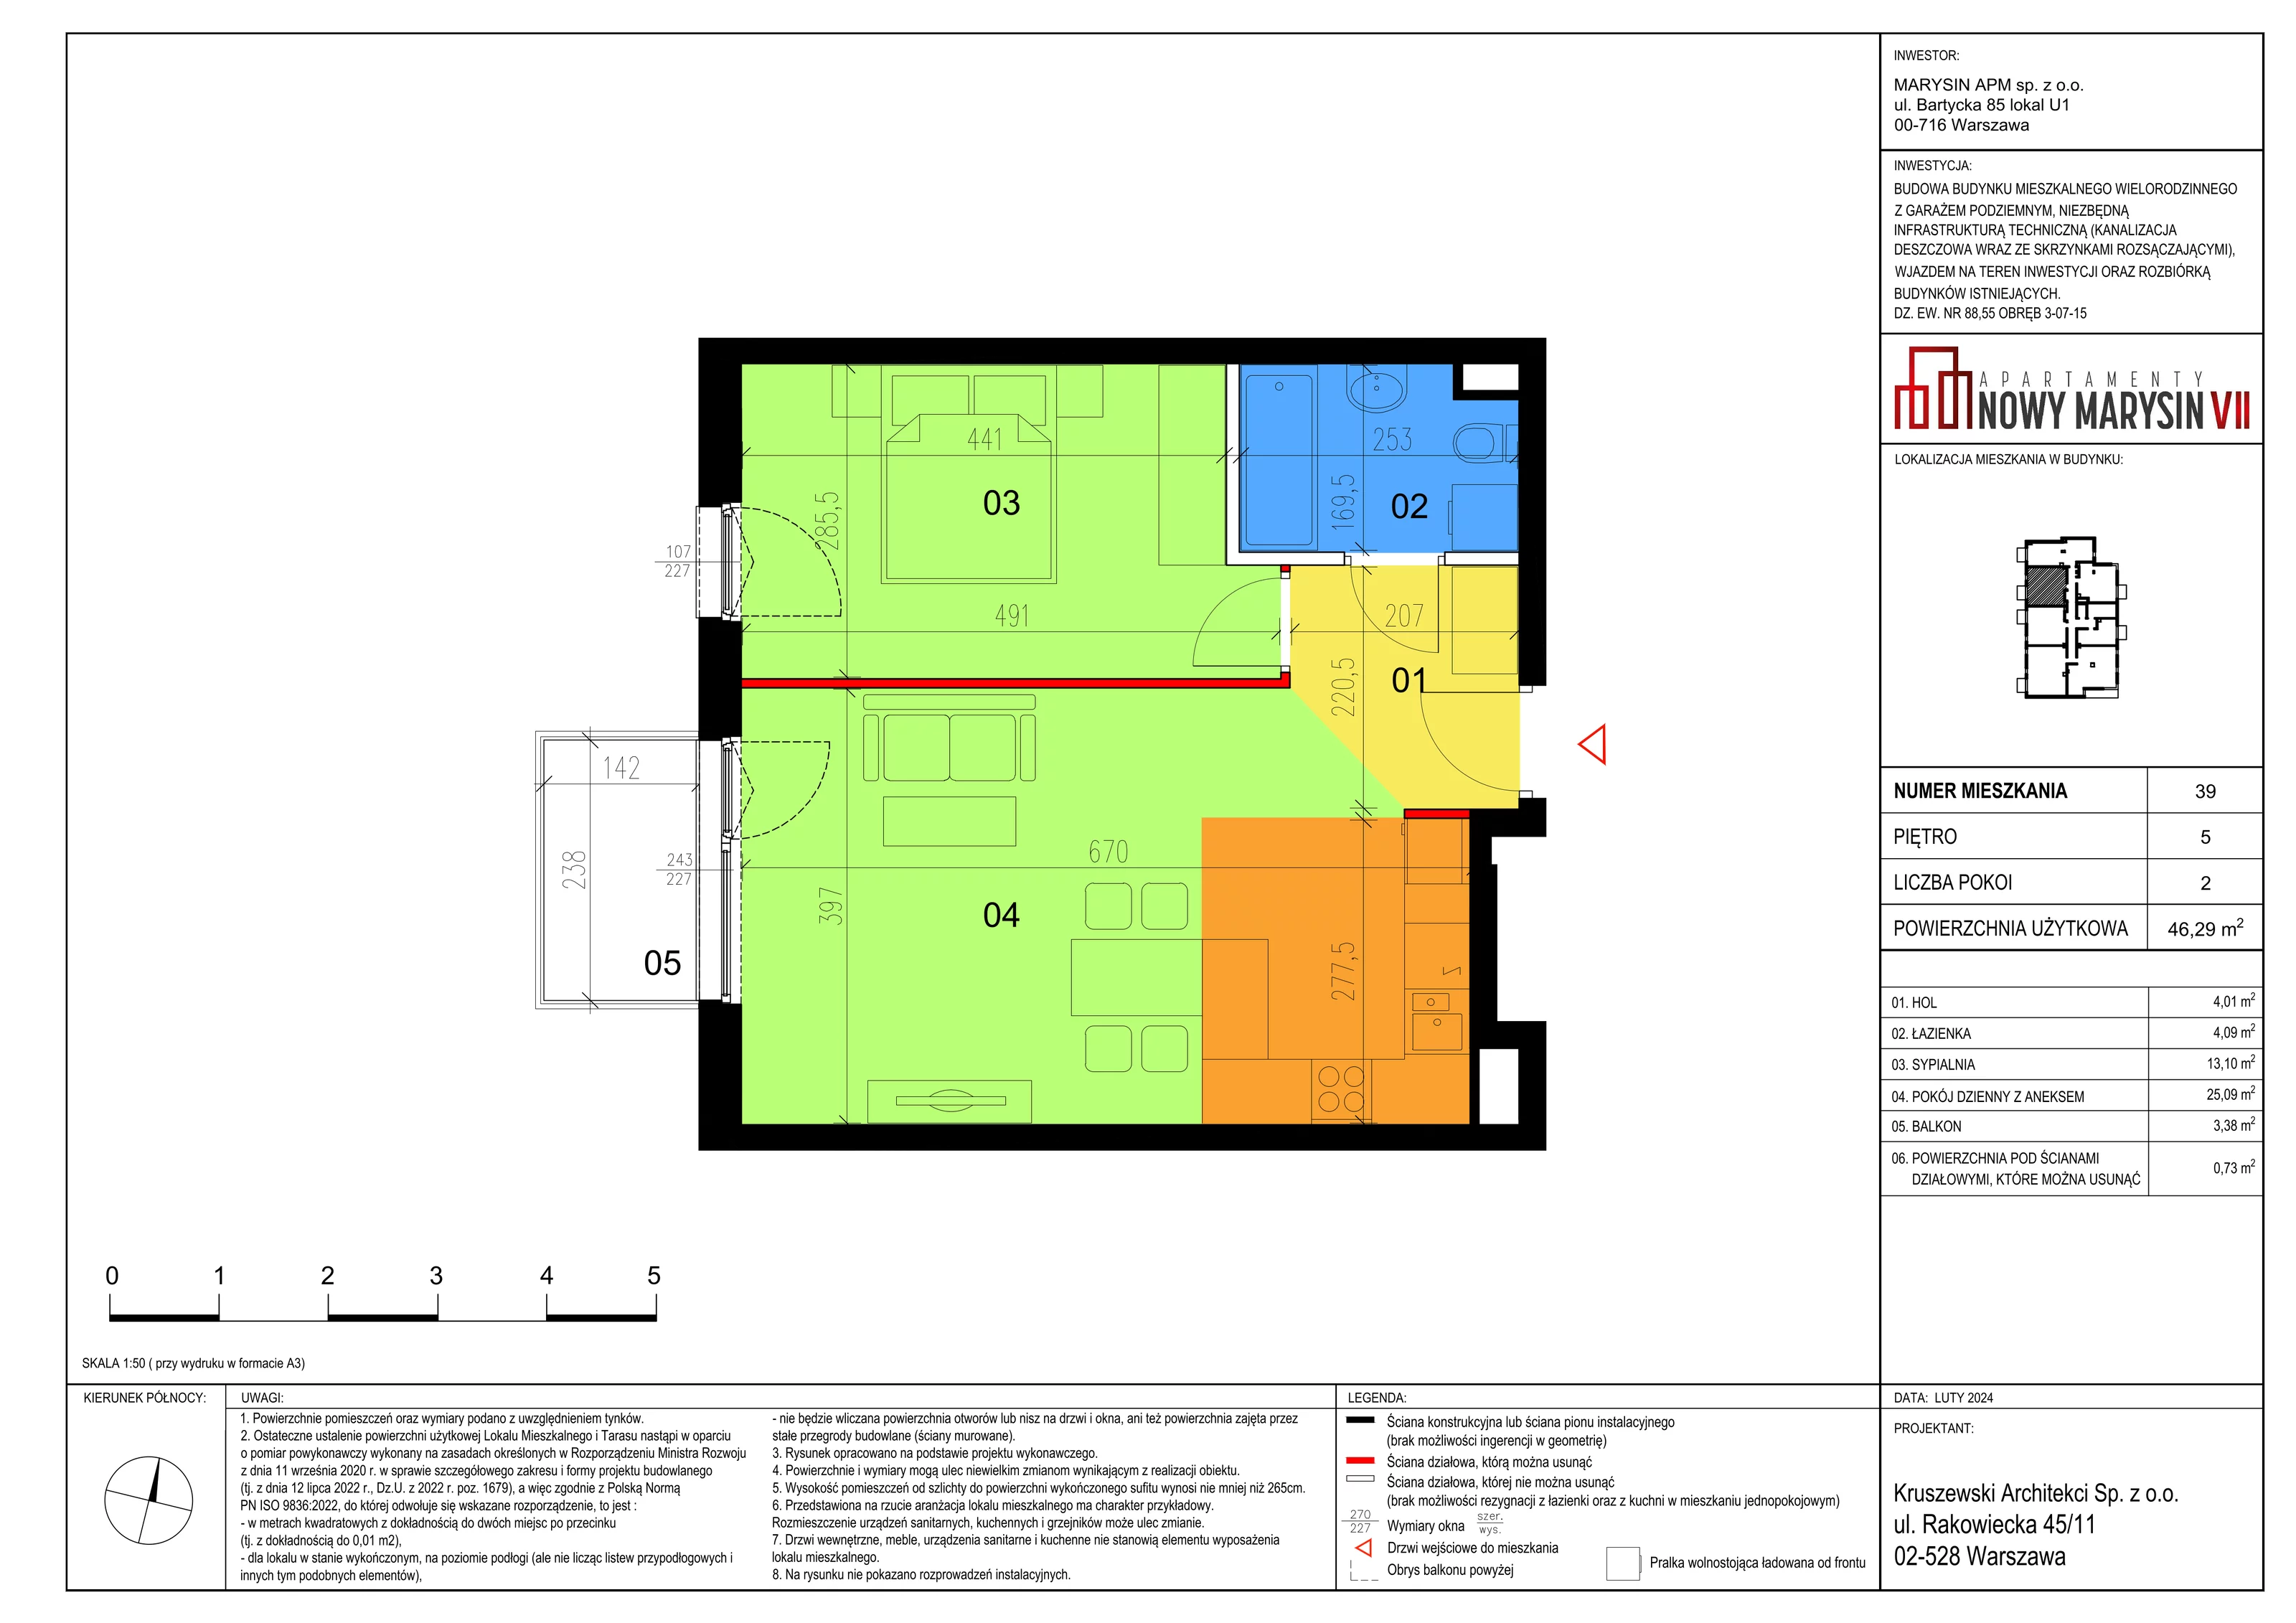 Mieszkanie 46,29 m², piętro 5, oferta nr VII_39, Apartamenty Marysin, Warszawa, Wawer, Marysin Wawerski, ul. Bluszczowa 14